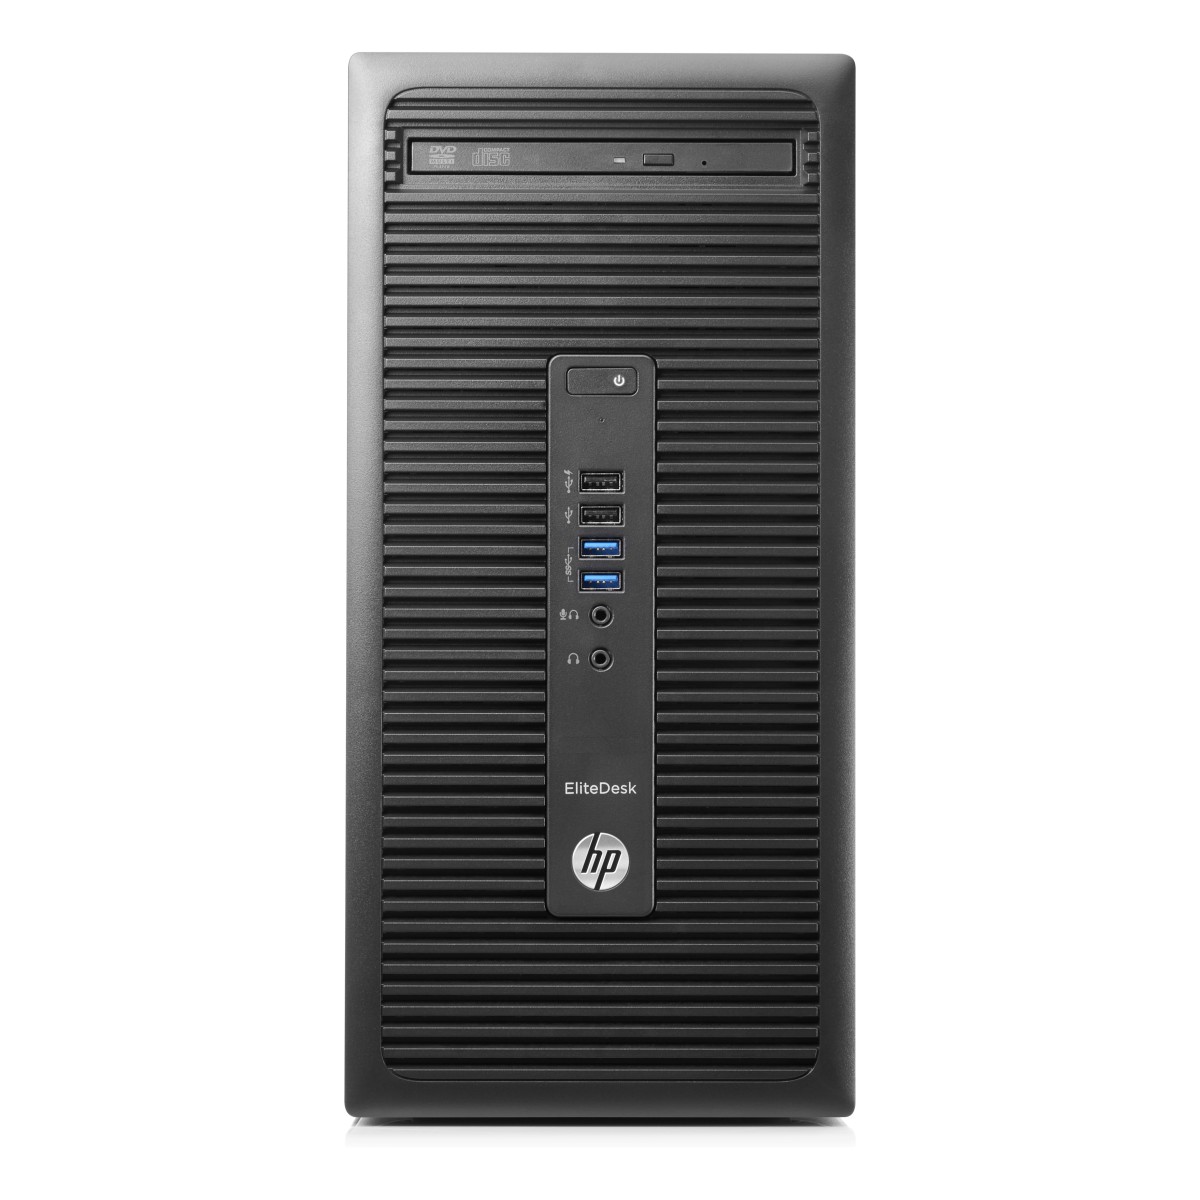 HP EliteDesk 705 G3 (2KR84EA)